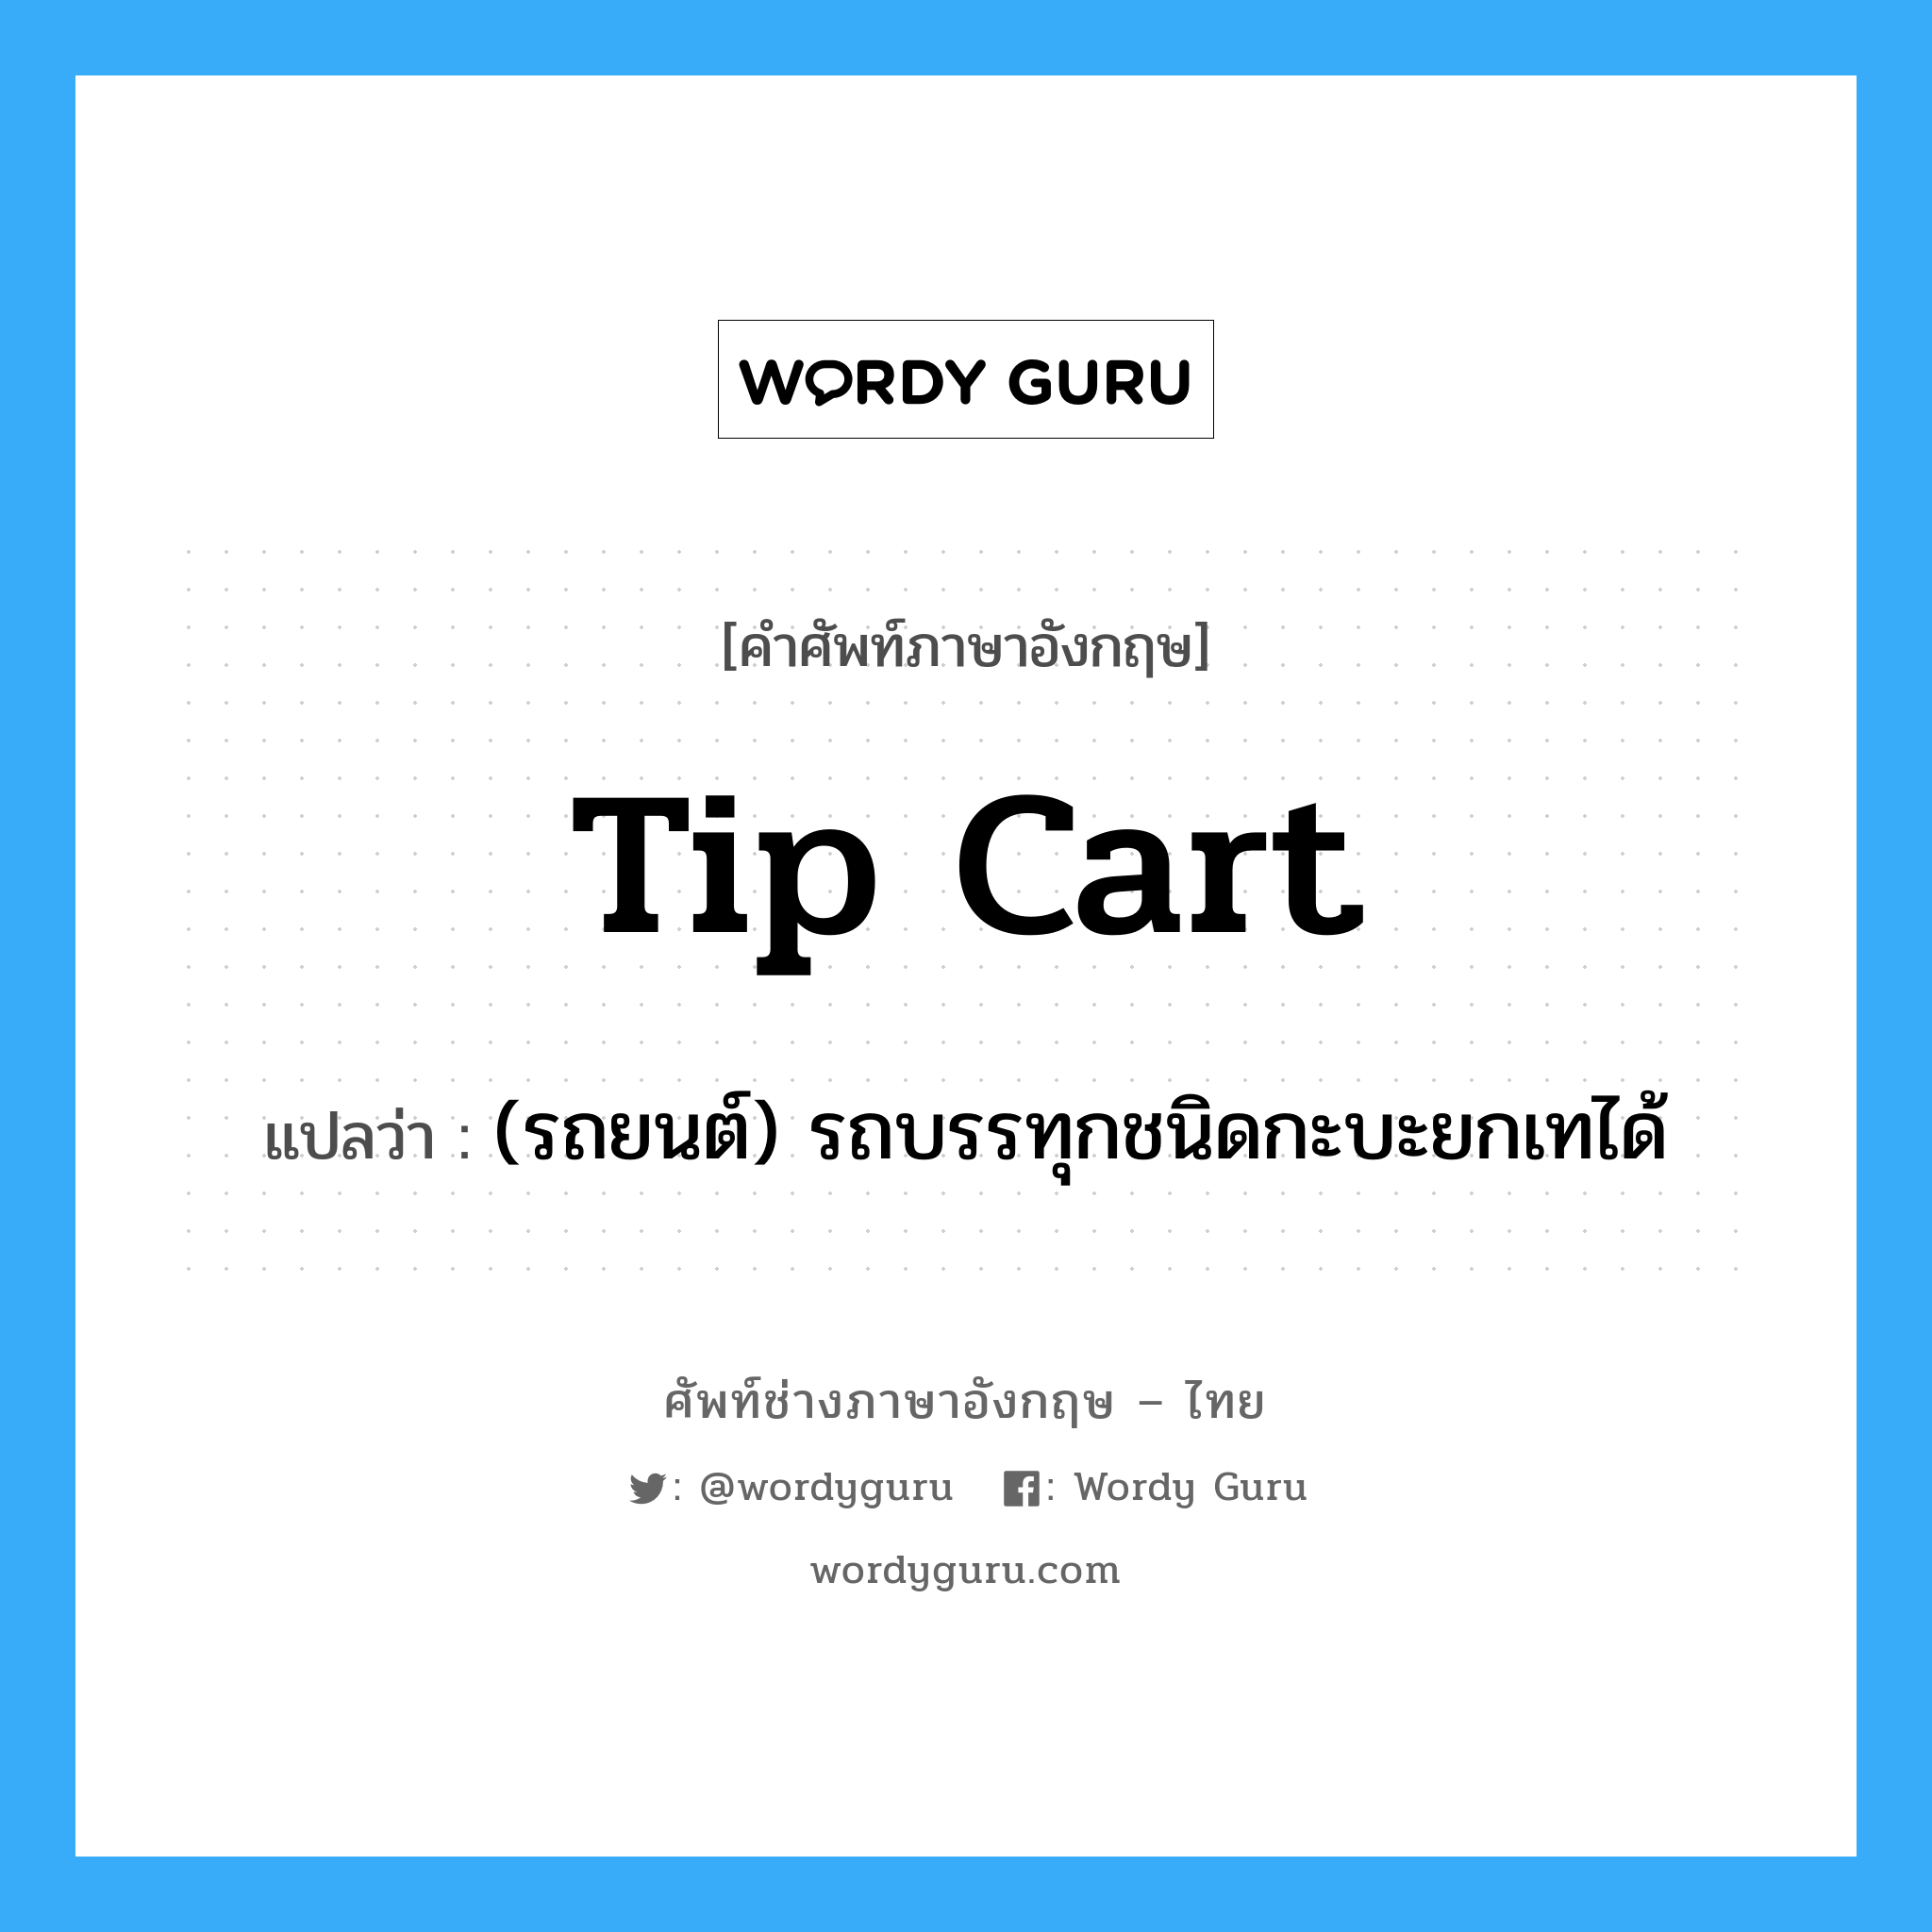 tip cart แปลว่า?, คำศัพท์ช่างภาษาอังกฤษ - ไทย tip cart คำศัพท์ภาษาอังกฤษ tip cart แปลว่า (รถยนต์) รถบรรทุกชนิดกะบะยกเทได้